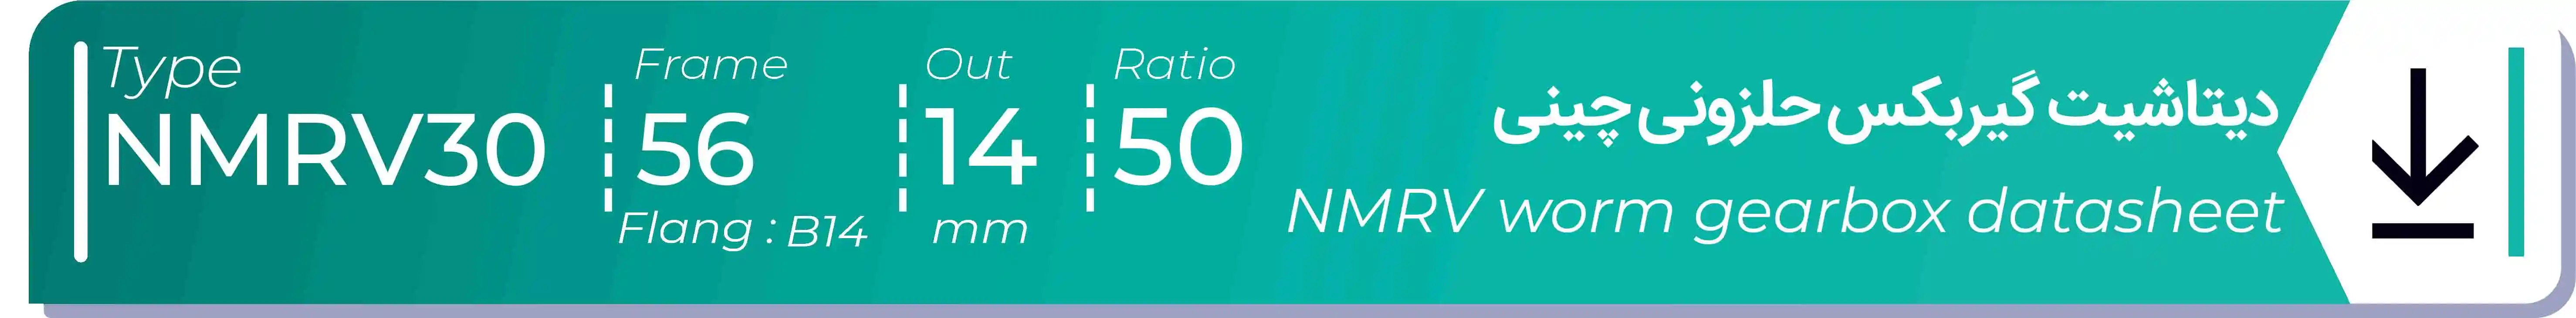  دیتاشیت و مشخصات فنی گیربکس حلزونی چینی   NMRV30  -  با خروجی 14- میلی متر و نسبت50